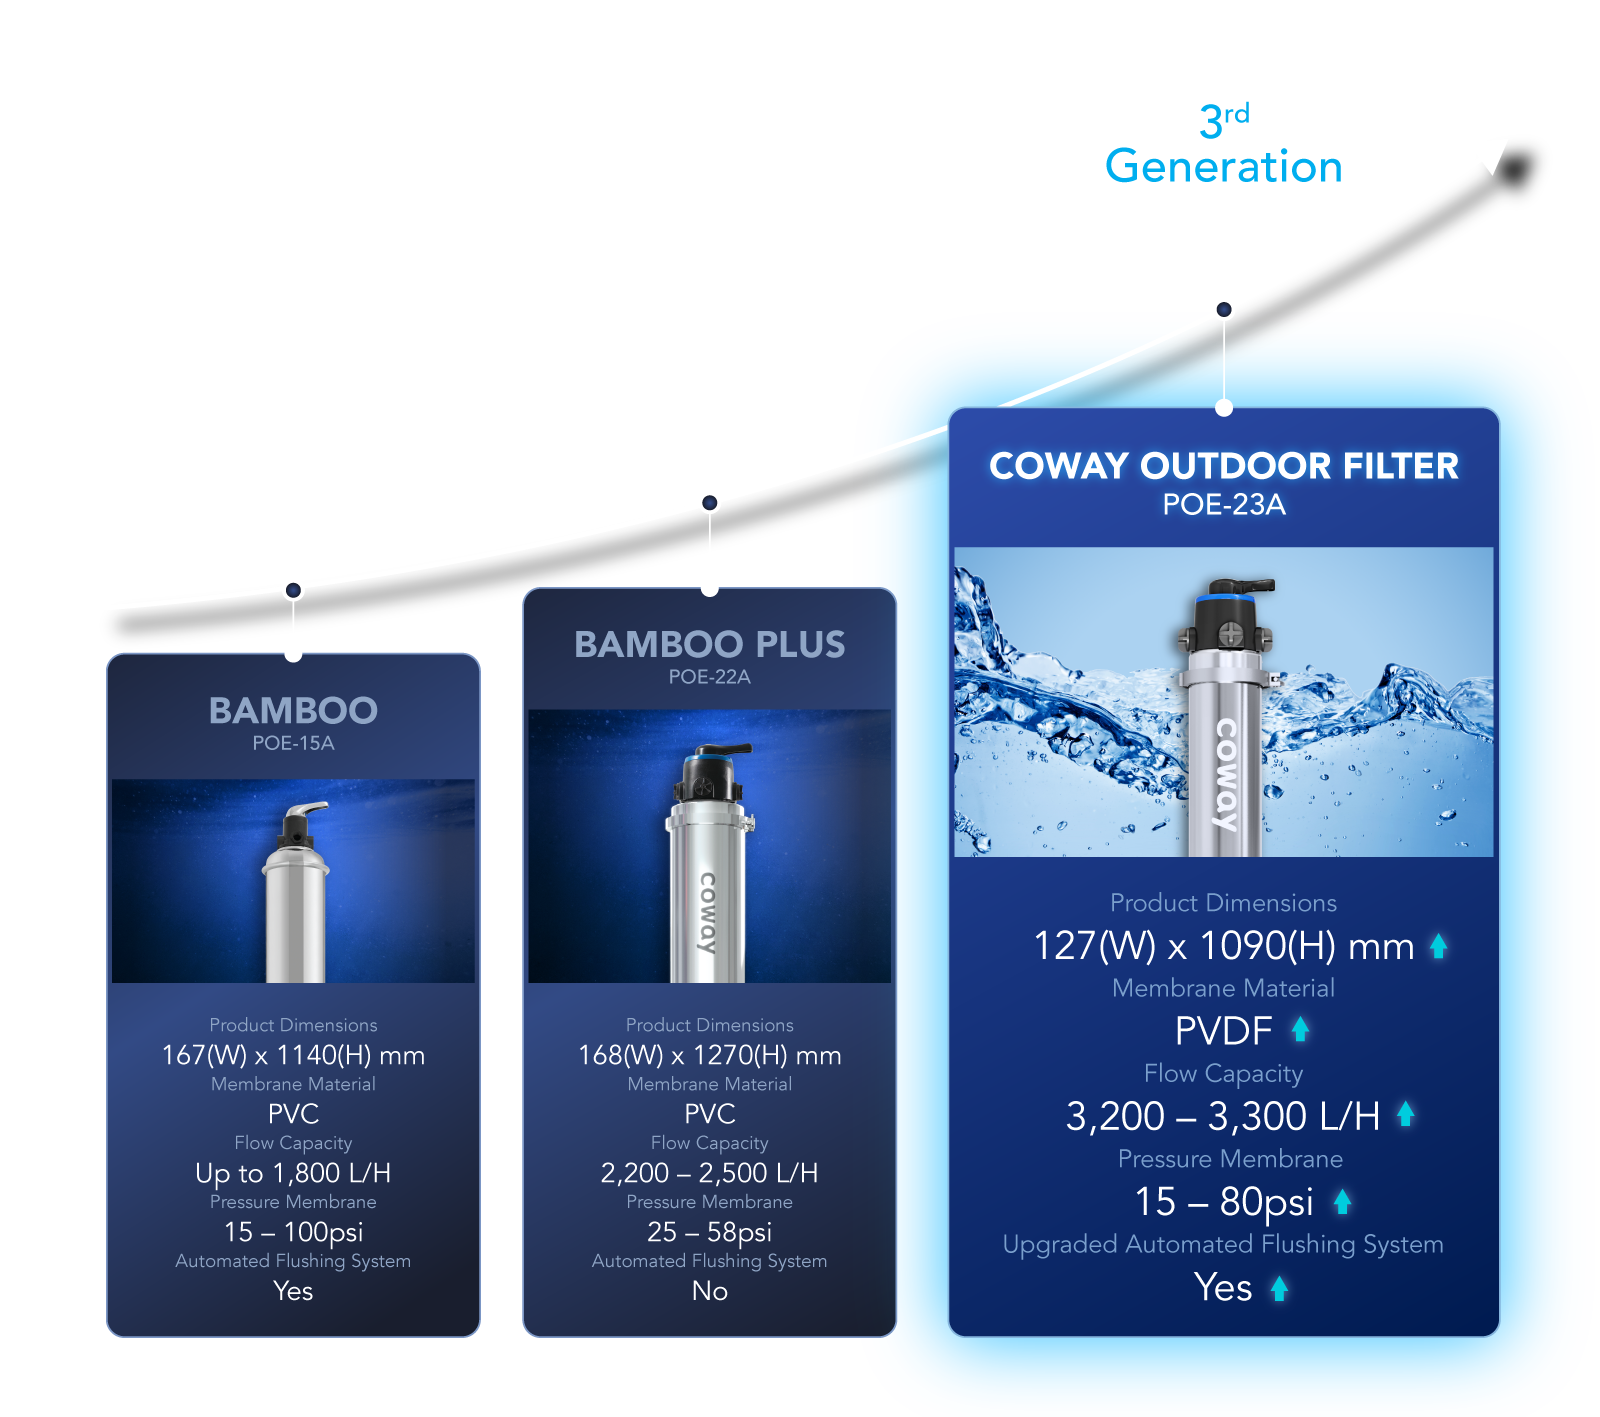 Enhanced Coway Outdoor Filter - Smaller & Stronger